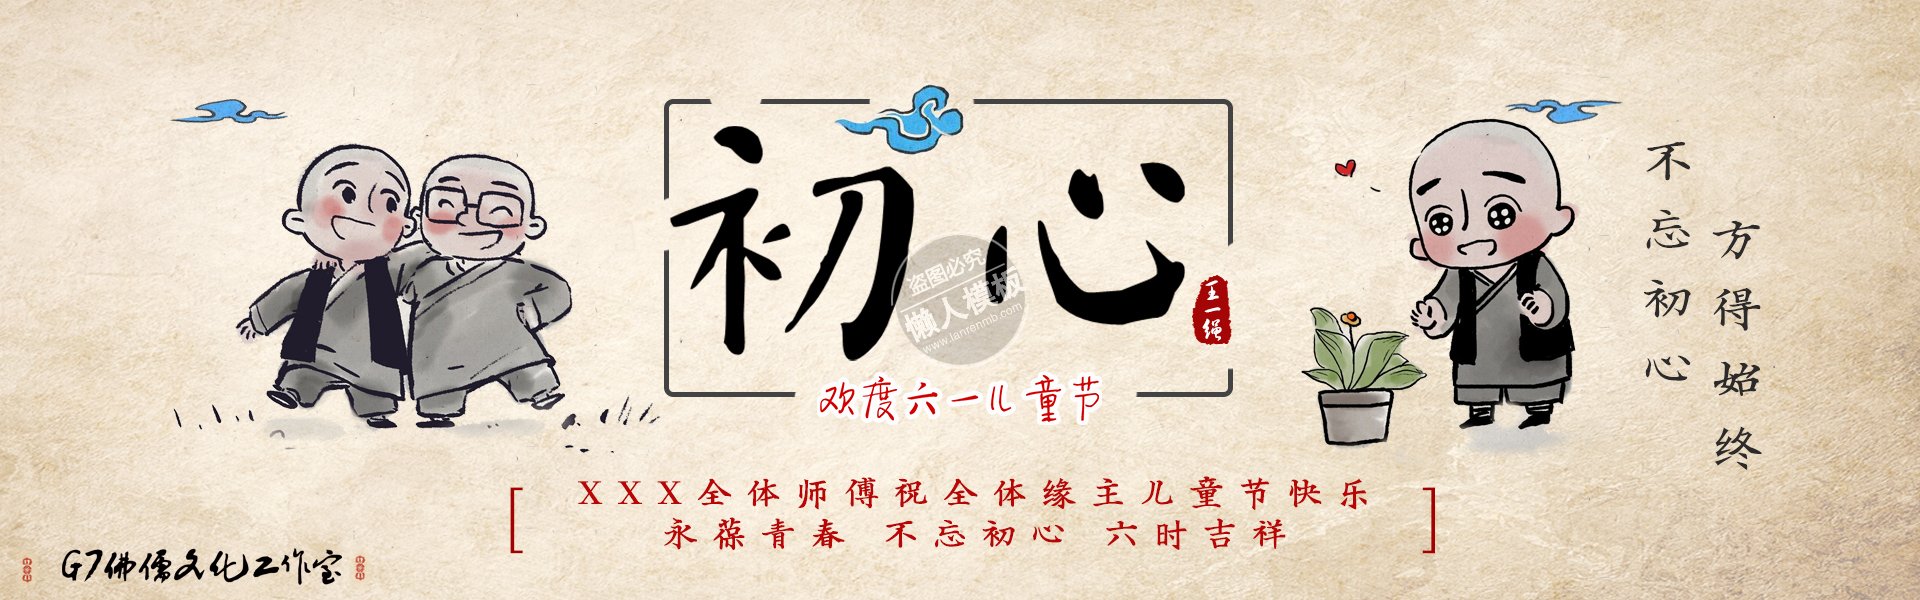 儿童节初心水墨banner ui界面设计移动端手机网页psd素材下载